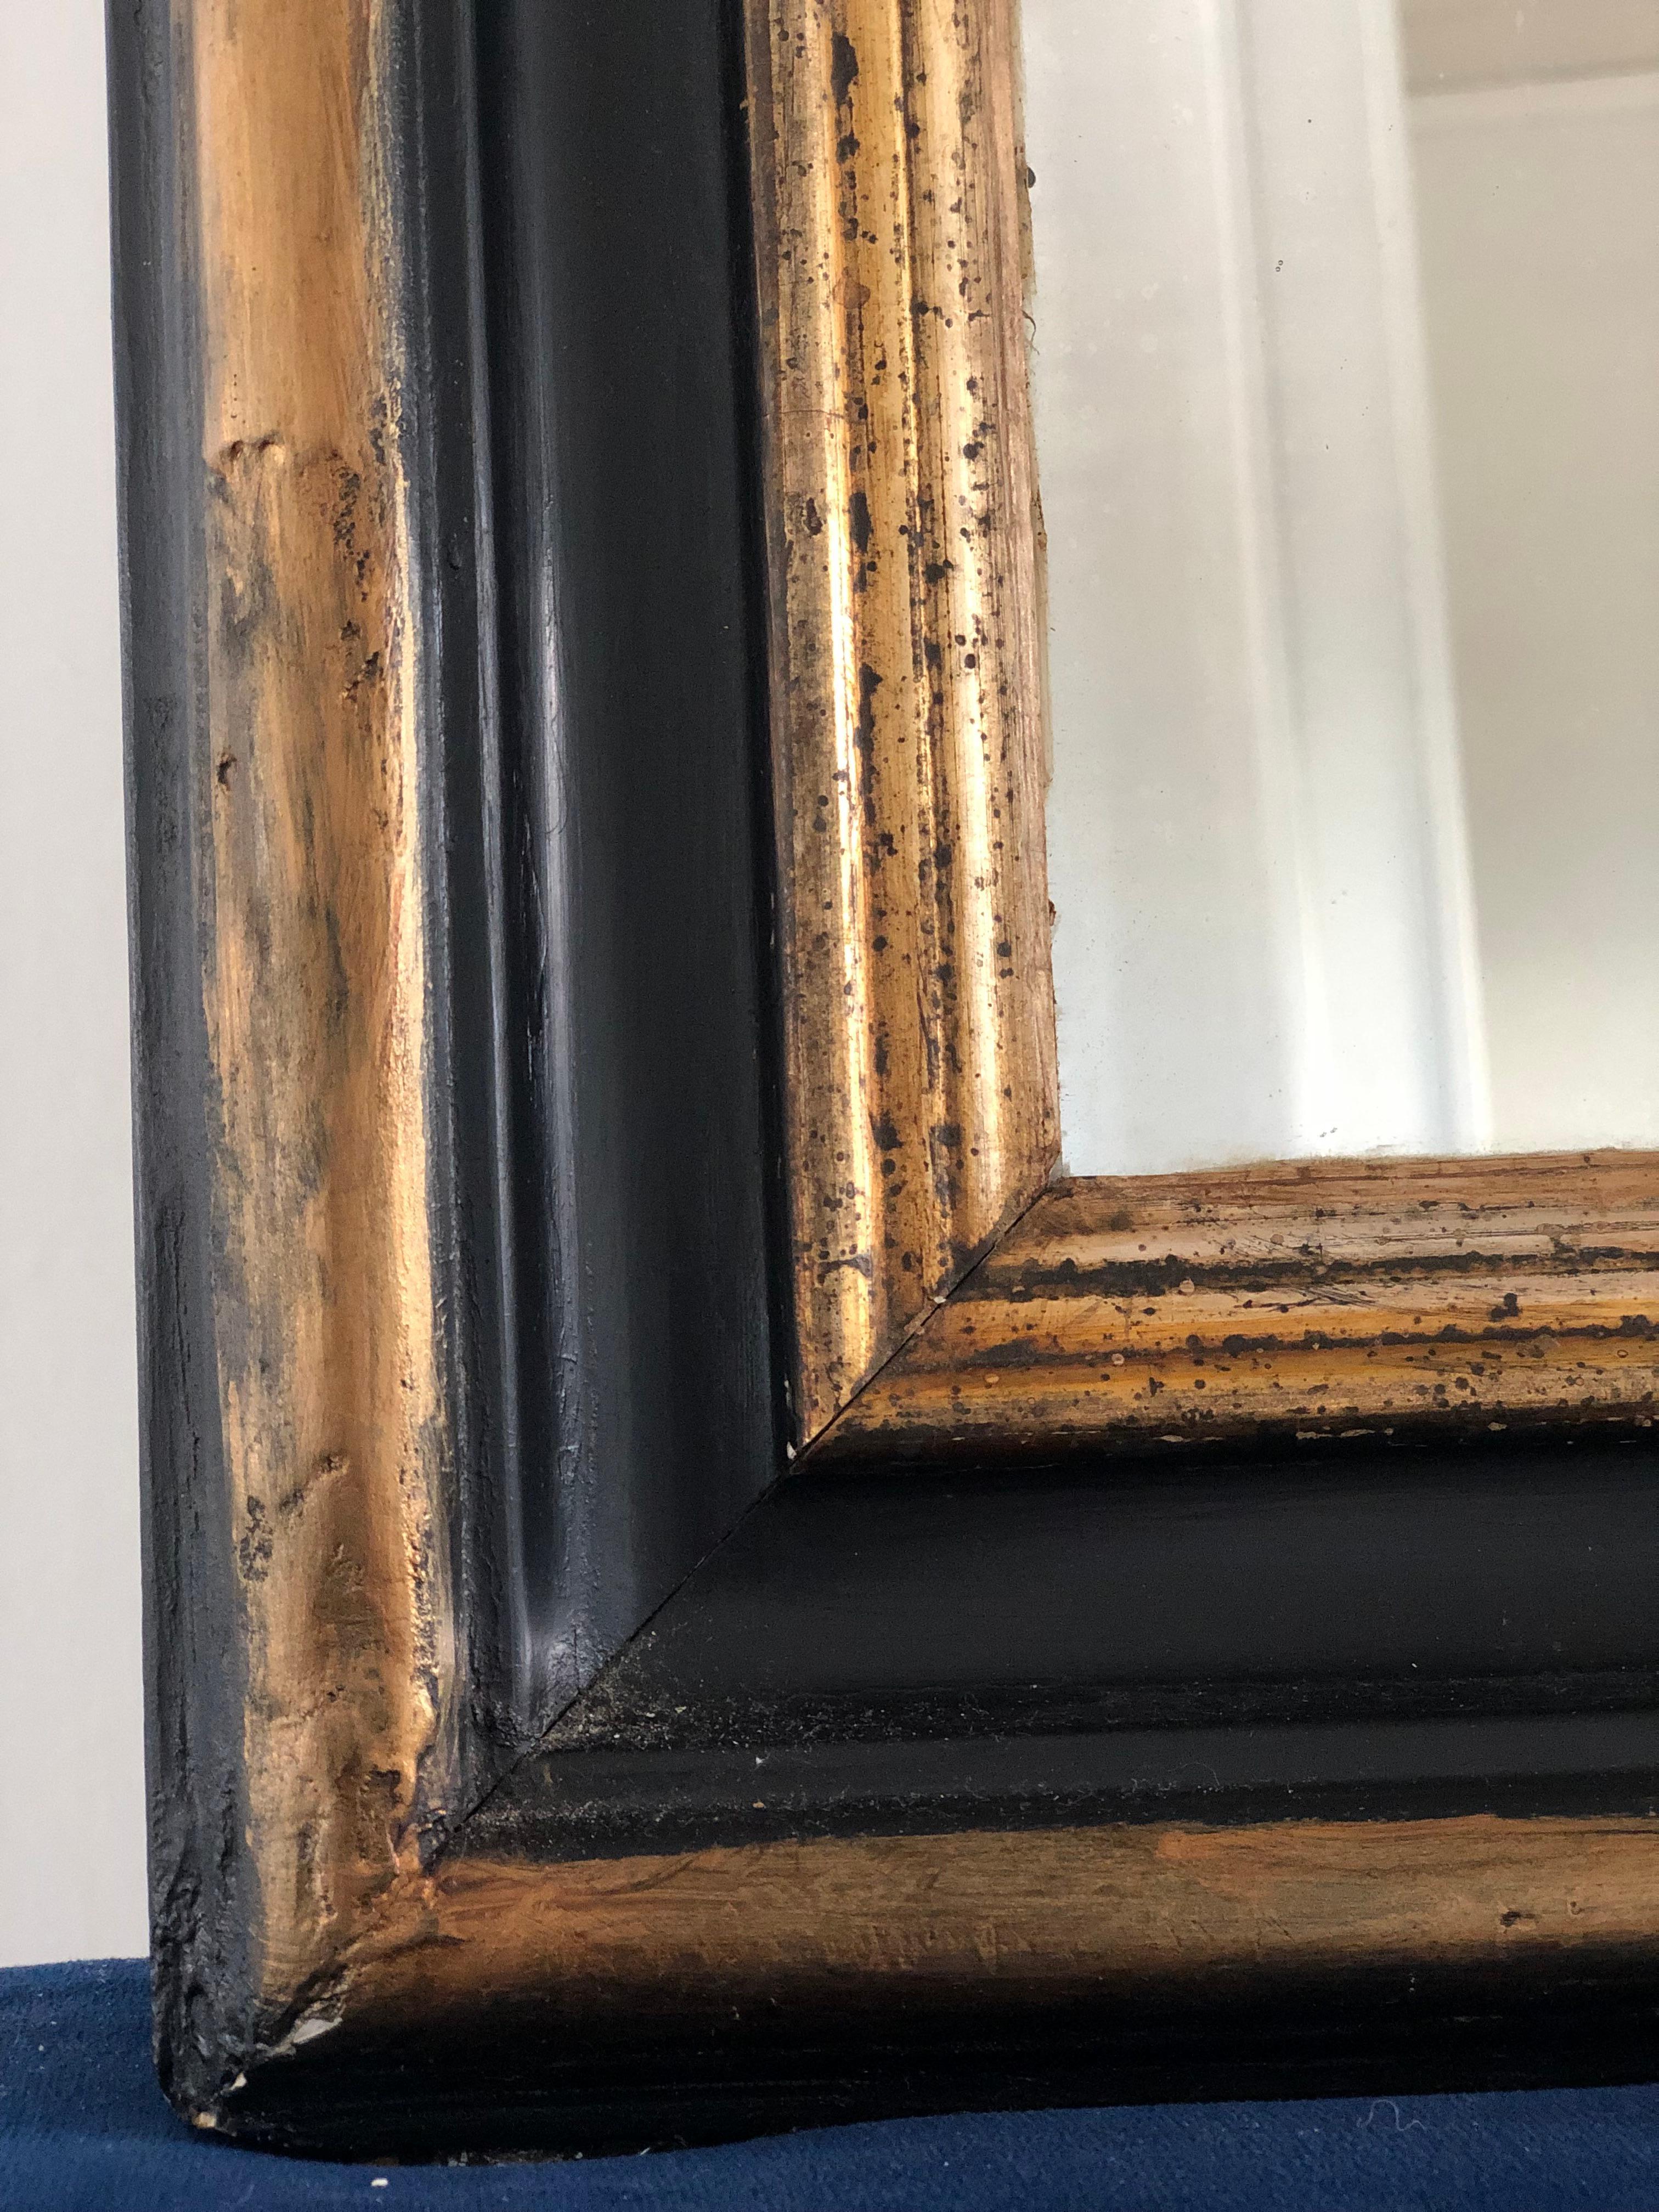 Miroir ancien Louis Philippe de très grande qualité, datant de la fin du 19e siècle et provenant de France. Une apparition avec grandeur. Le cadre en bois doré richement sculpté avec les coins supérieurs incurvés présente une belle patine usée à la